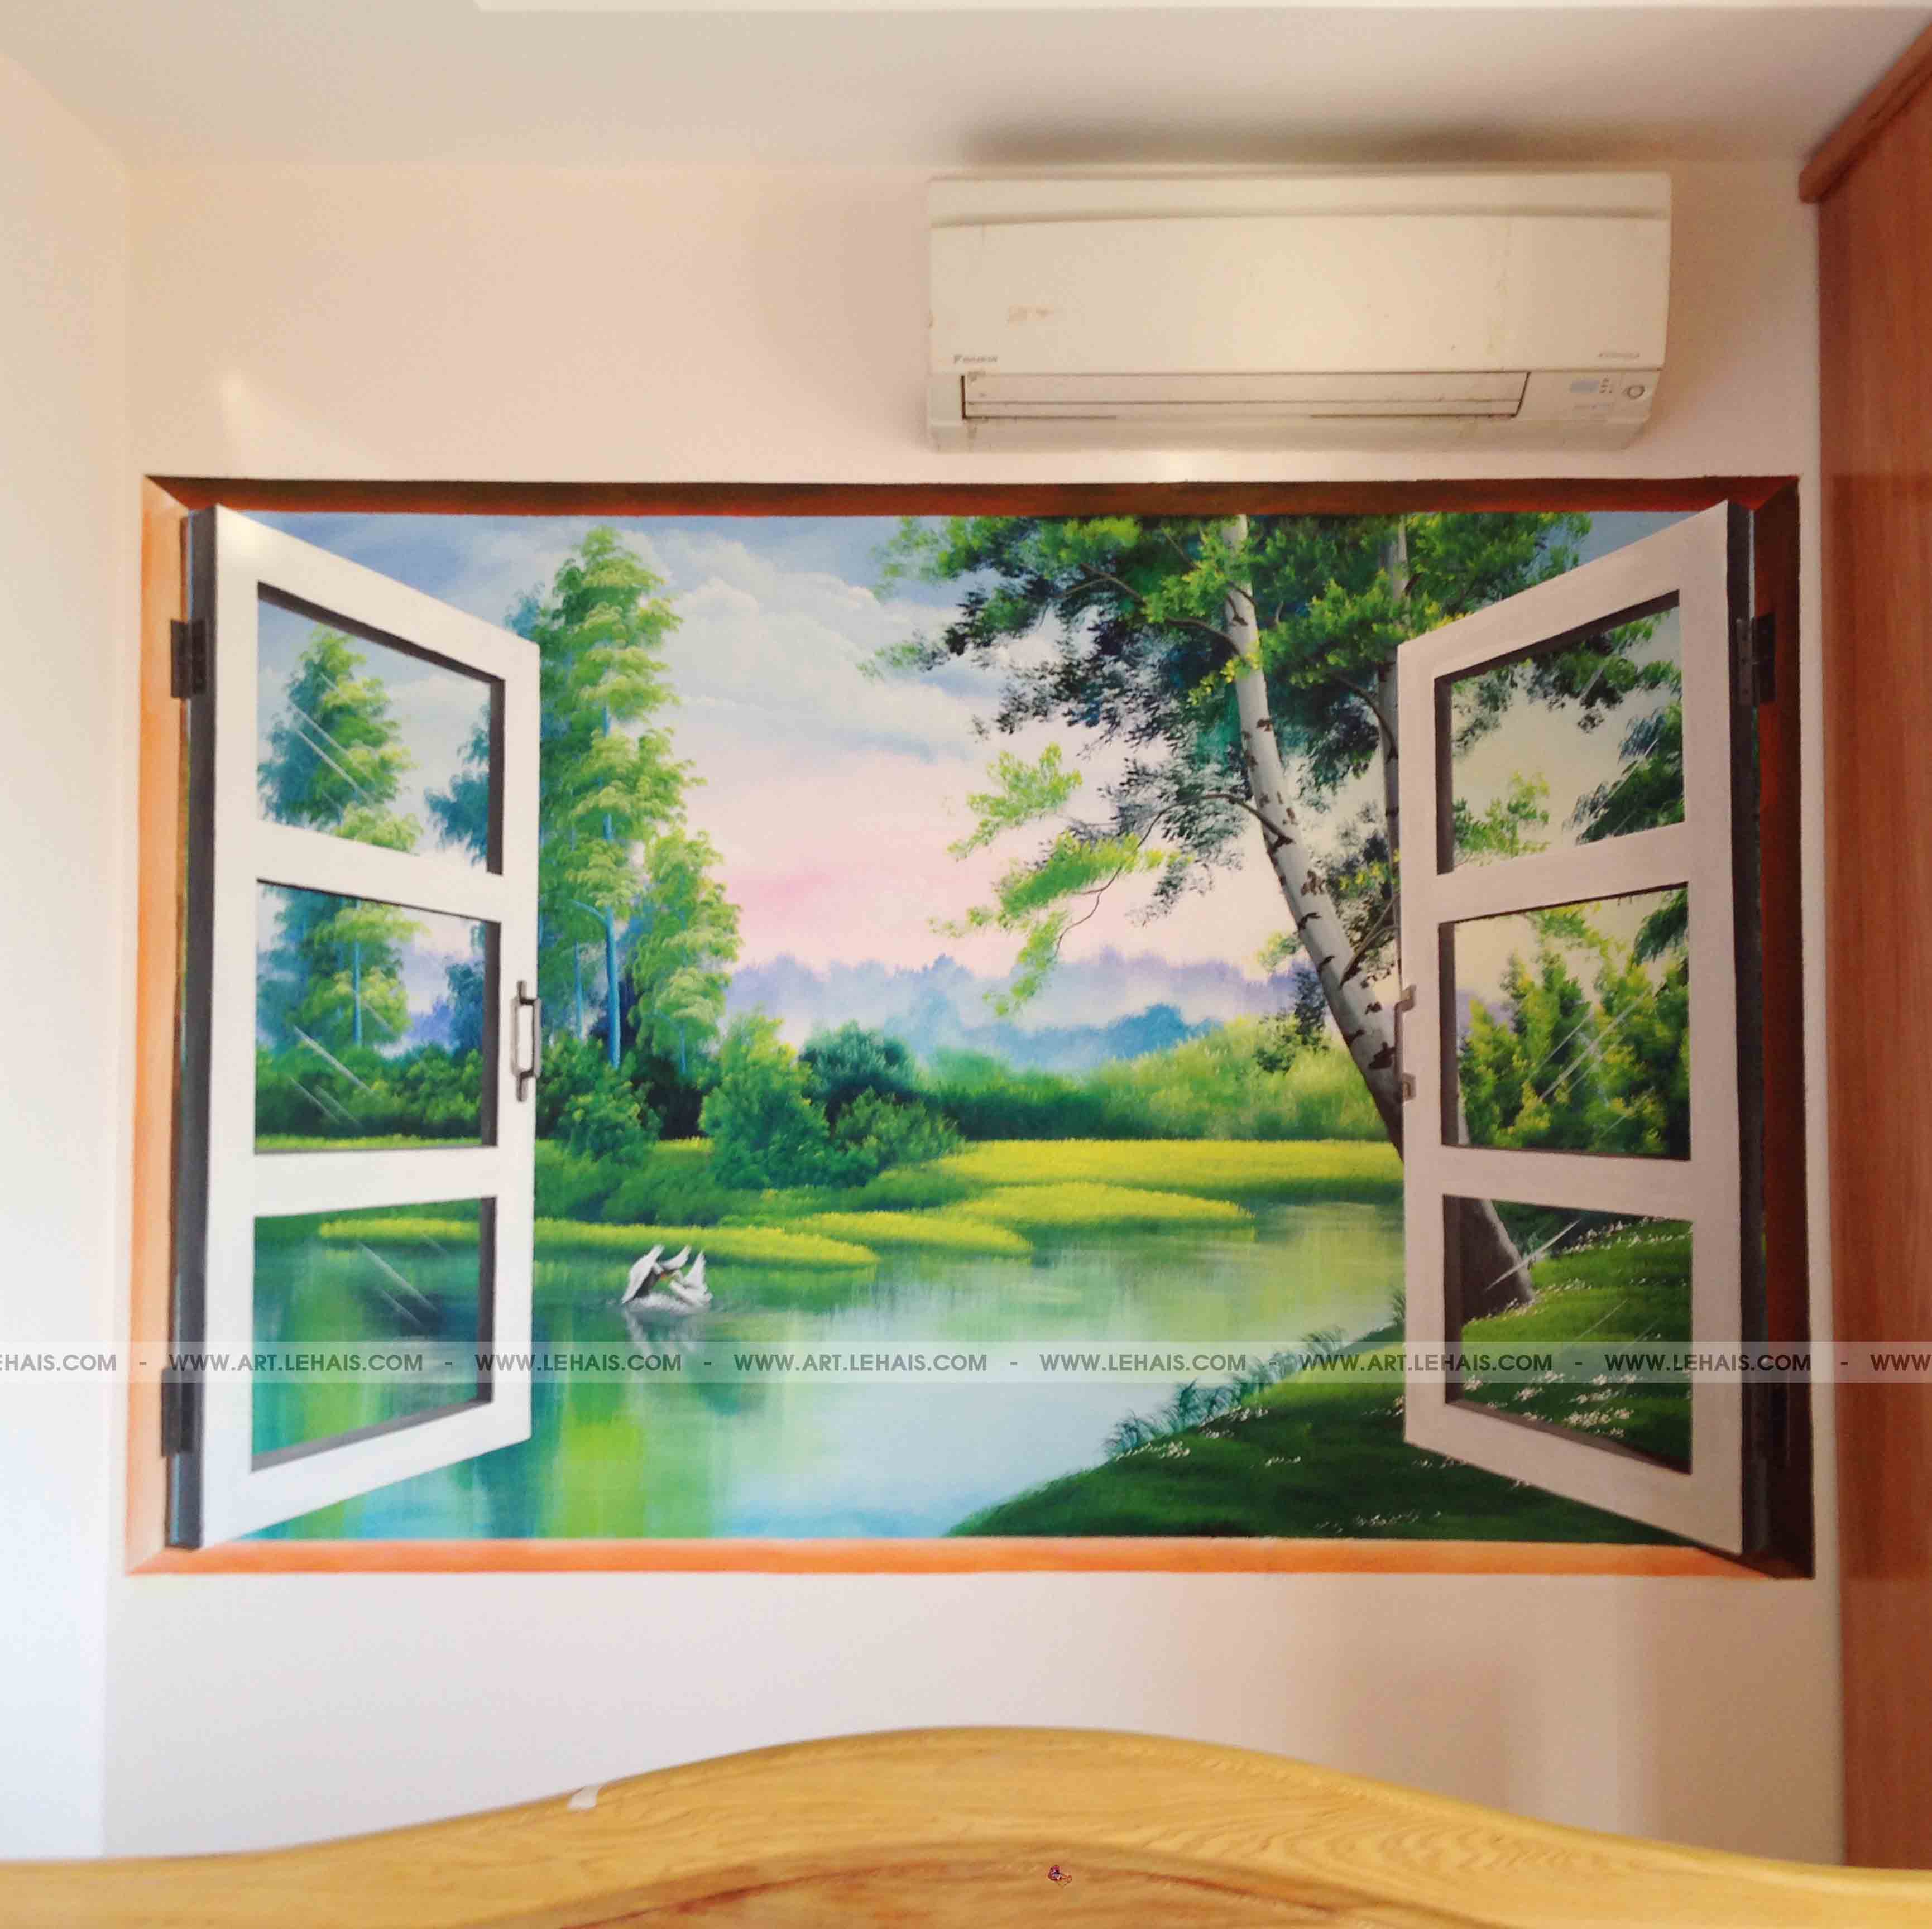 Vẽ tranh khung cửa sổ 3D tại Hà Đông, Hà Nội - TT67LHAR